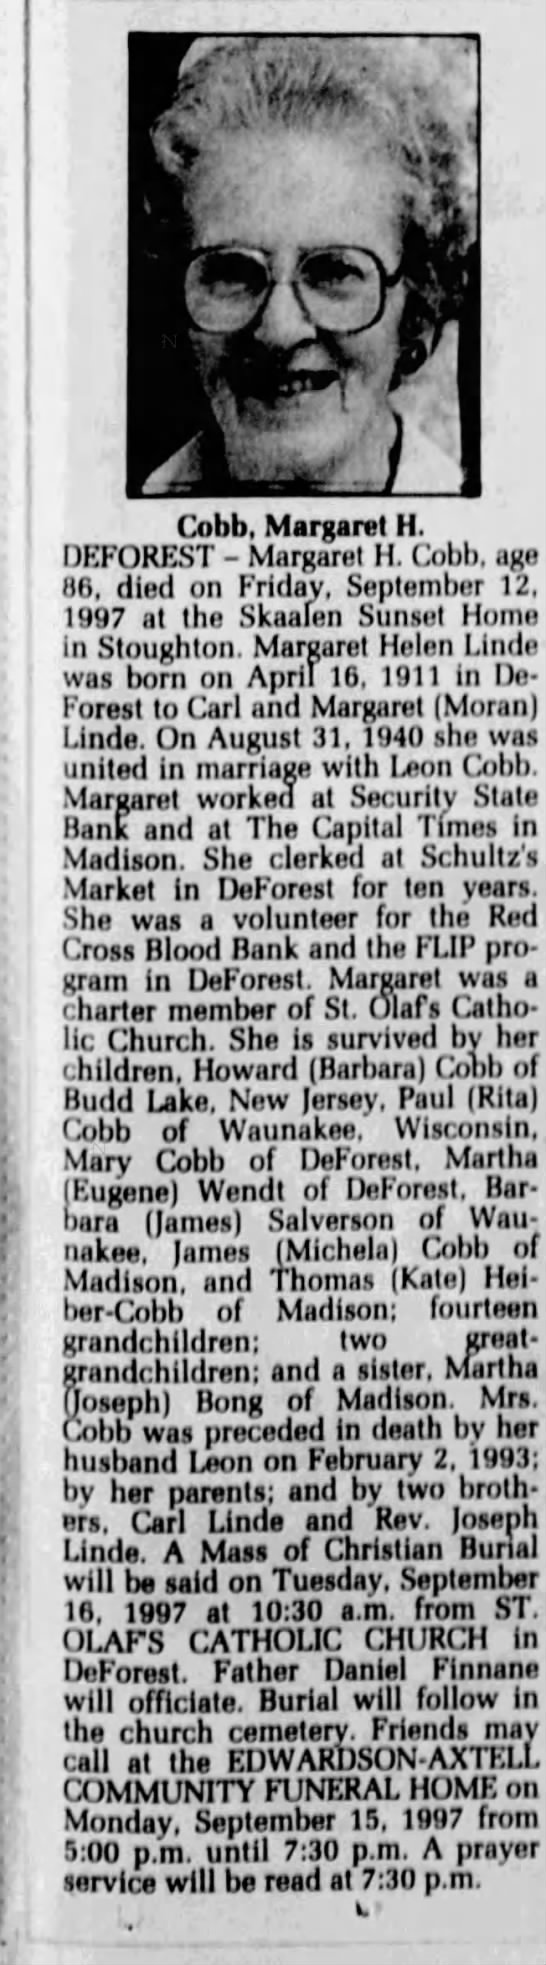 Obituary for Margaret Helen Cobb, 1911-1997 (Aged 86)